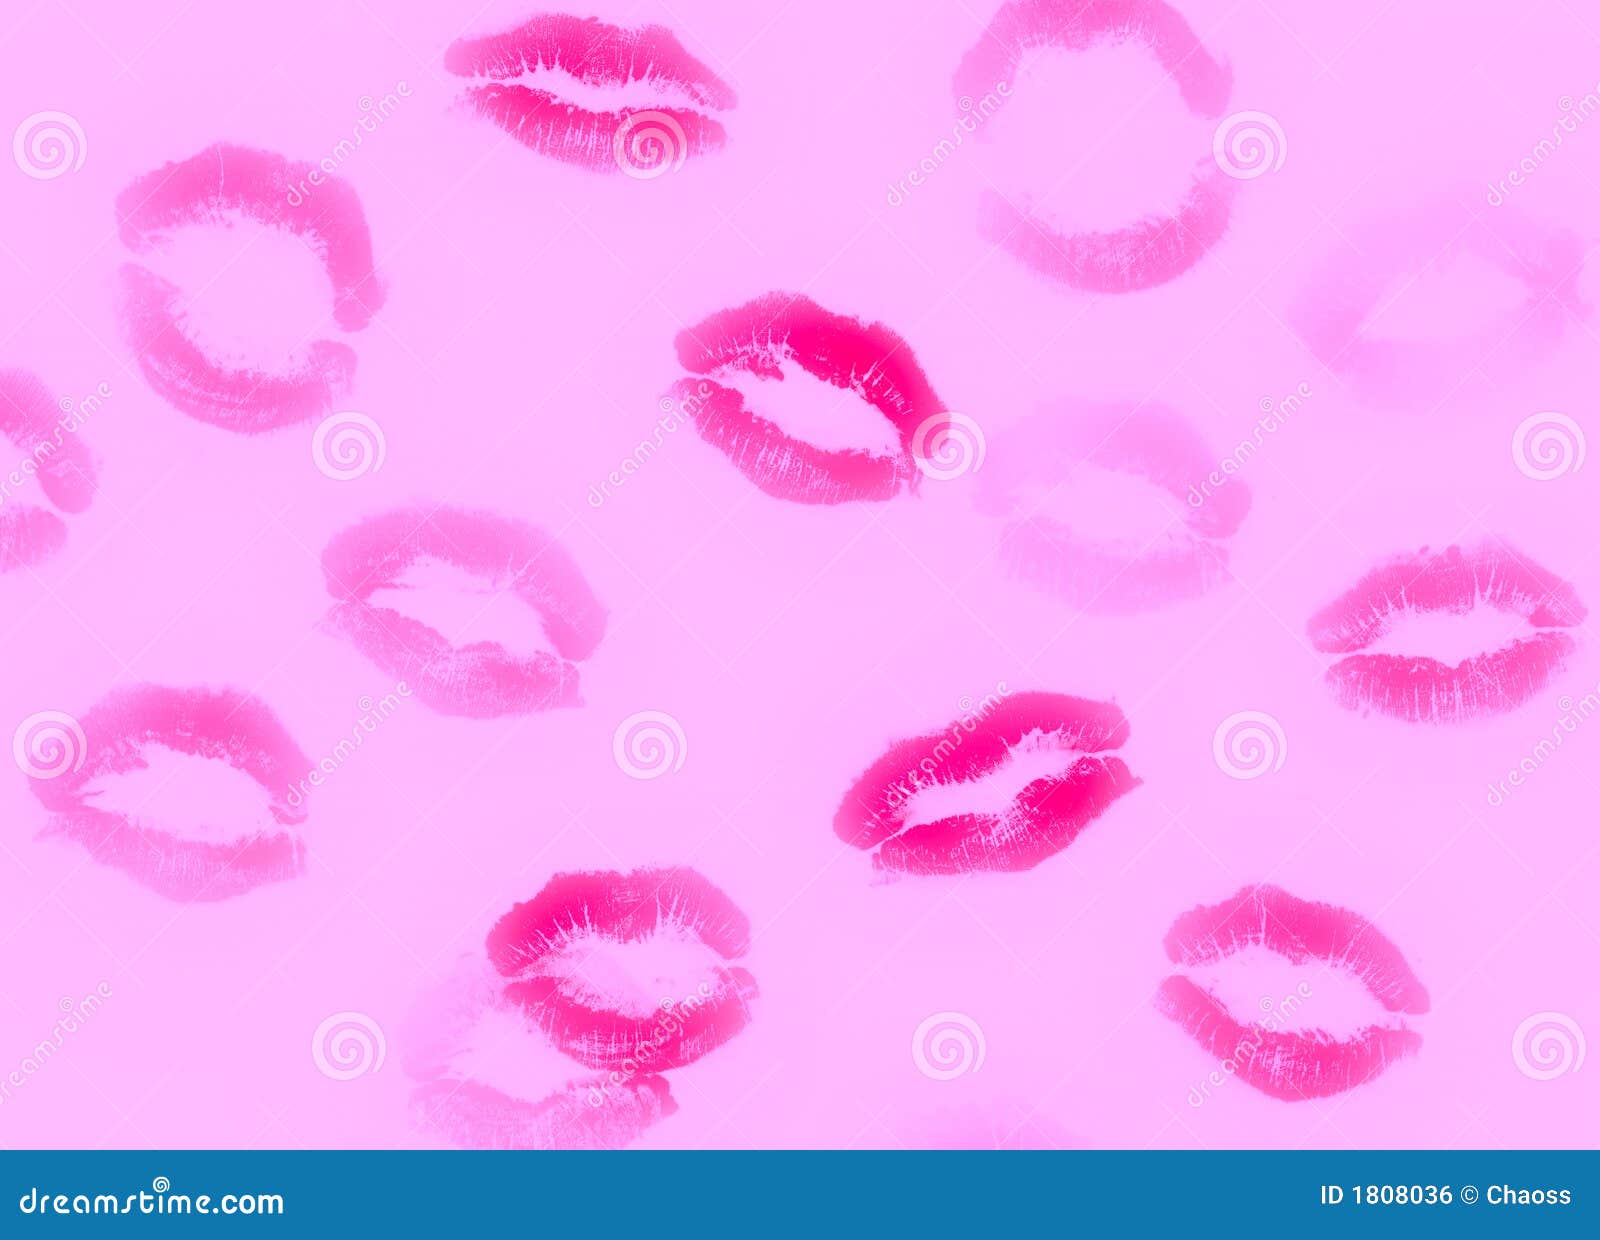 Hình nền hồng trắng tinh khôi với những nụ hôn nhẹ nhàng sẽ khiến bạn khao khát tình yêu dịu dàng. Hãy cùng ngắm nhìn hình này và tìm kiếm tình yêu trong cuộc sống nhé.